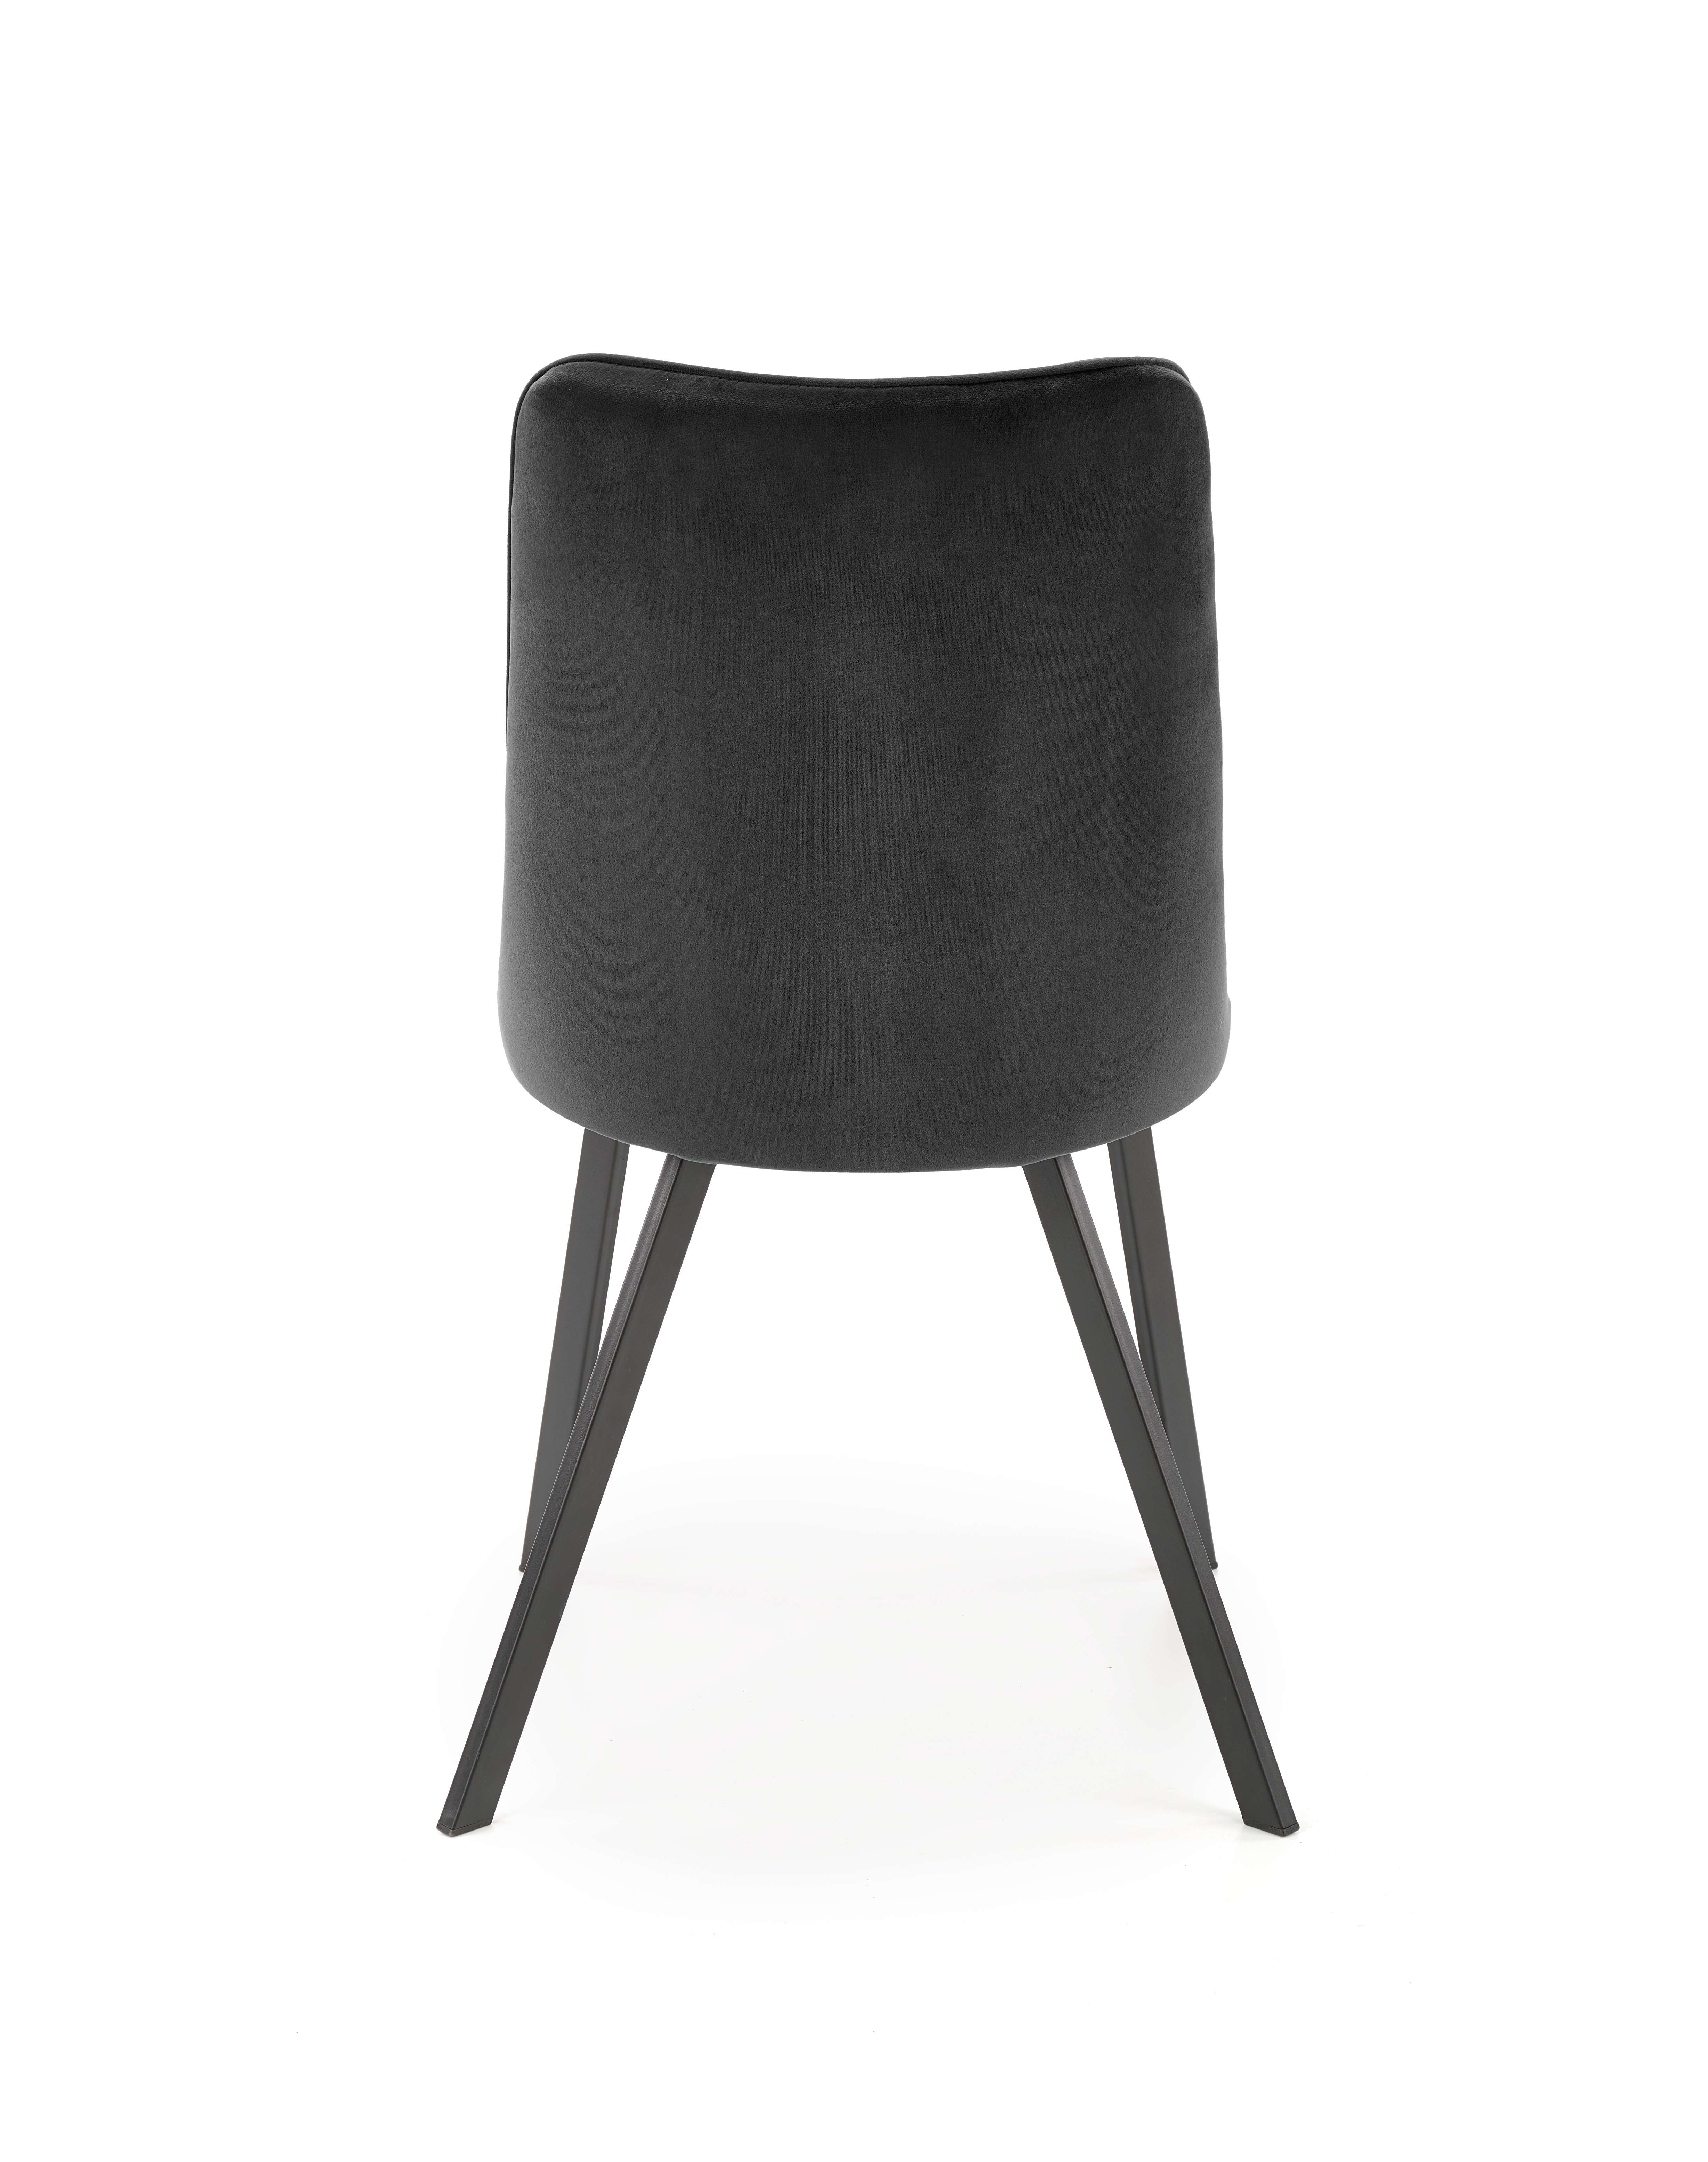 K450 krzesło czarny k450 krzesło czarny